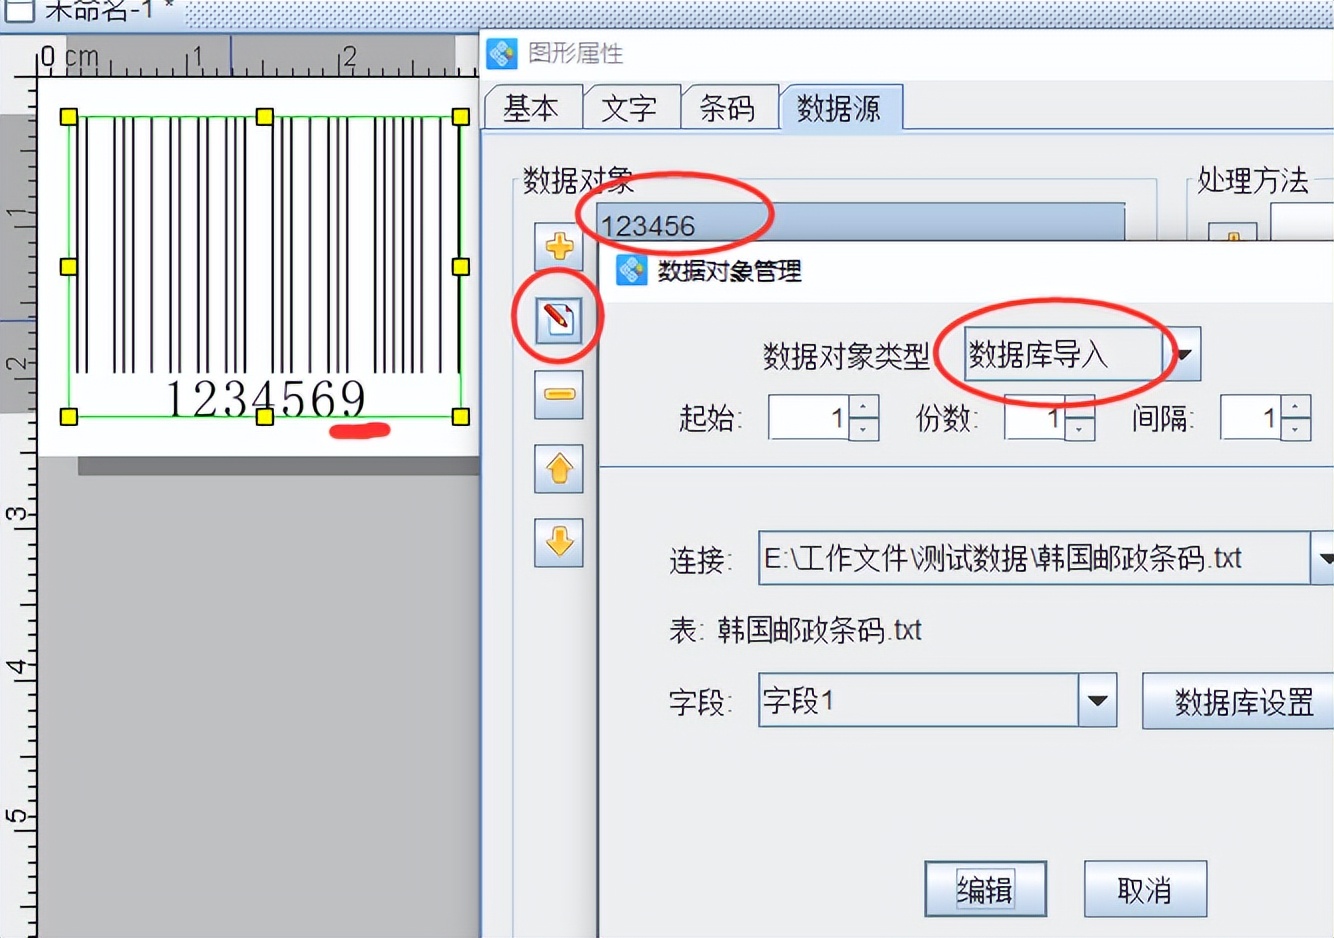 条形码生成软件如何制作韩国邮政条形码